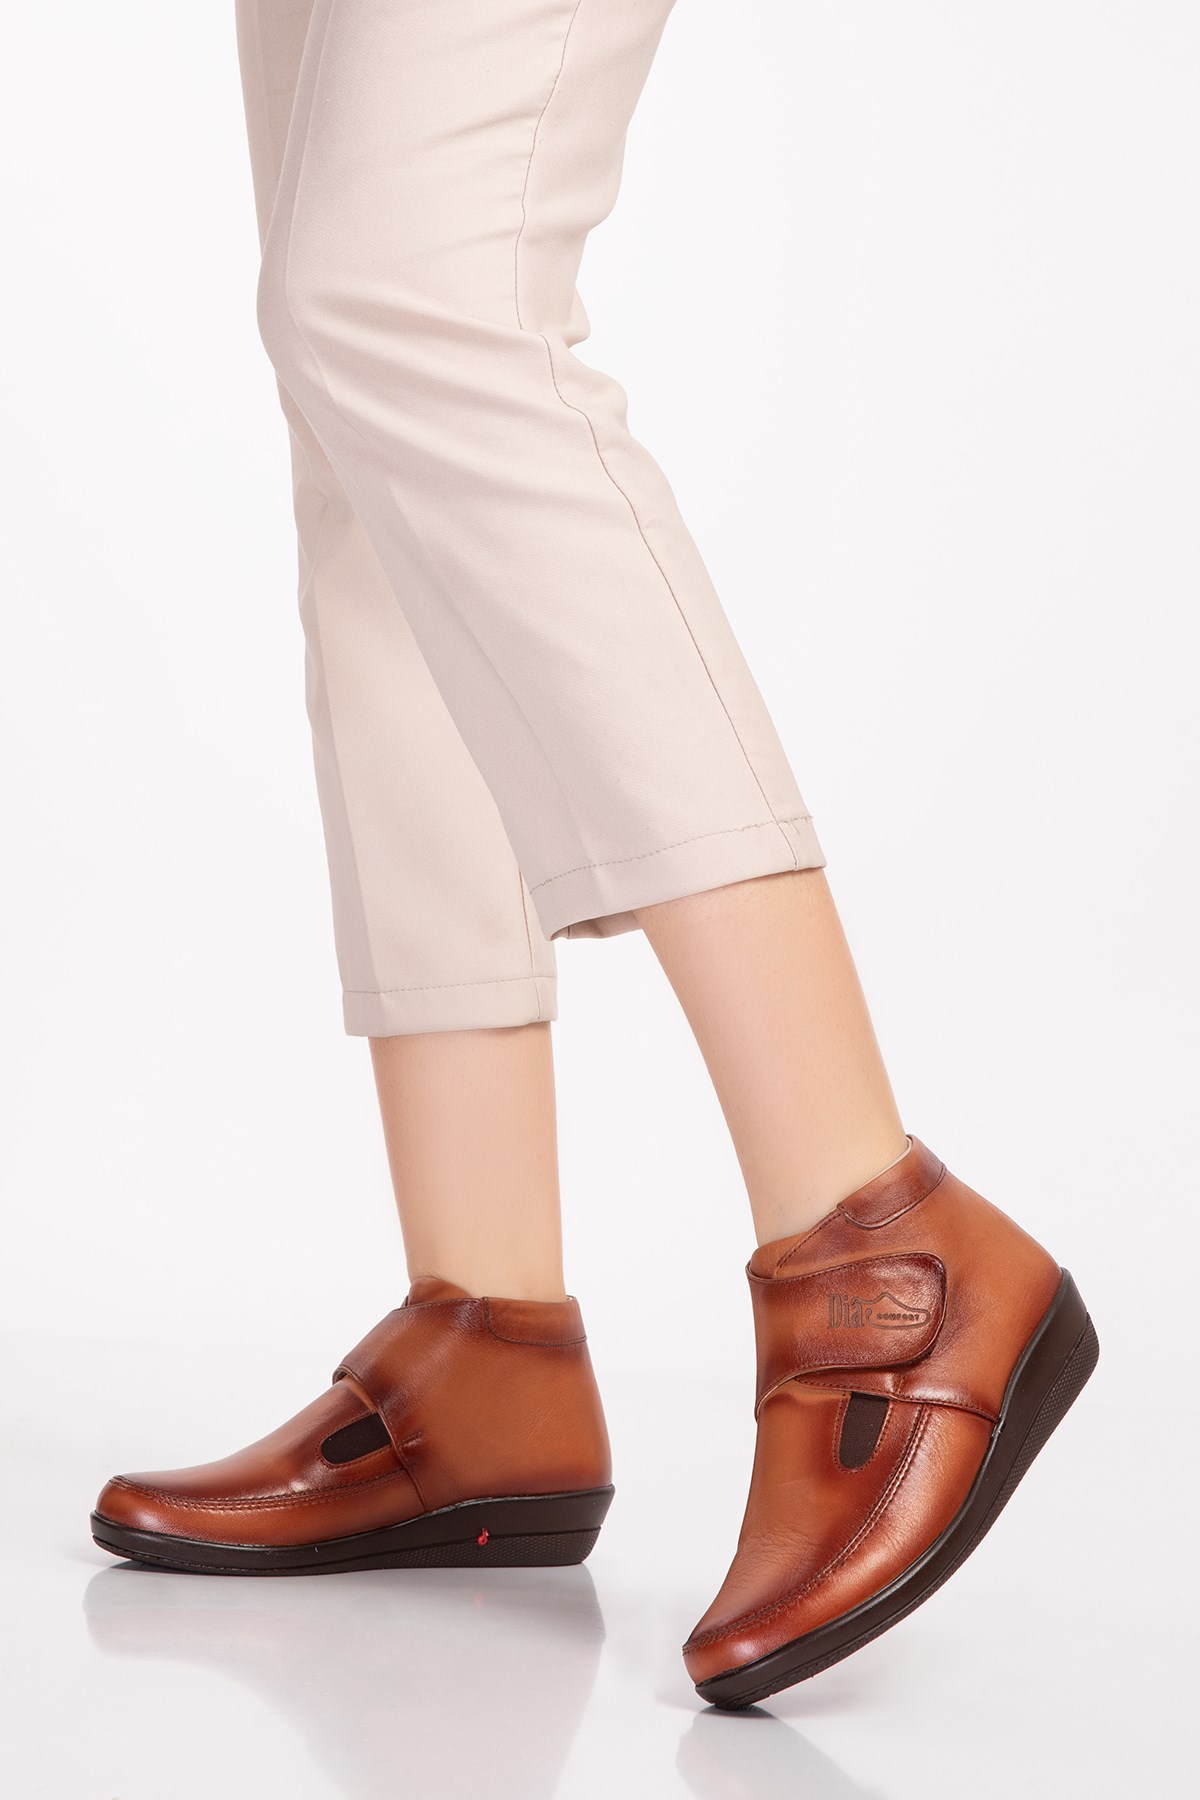 brown diabetic orthopedic women casual shoes - dia comfort